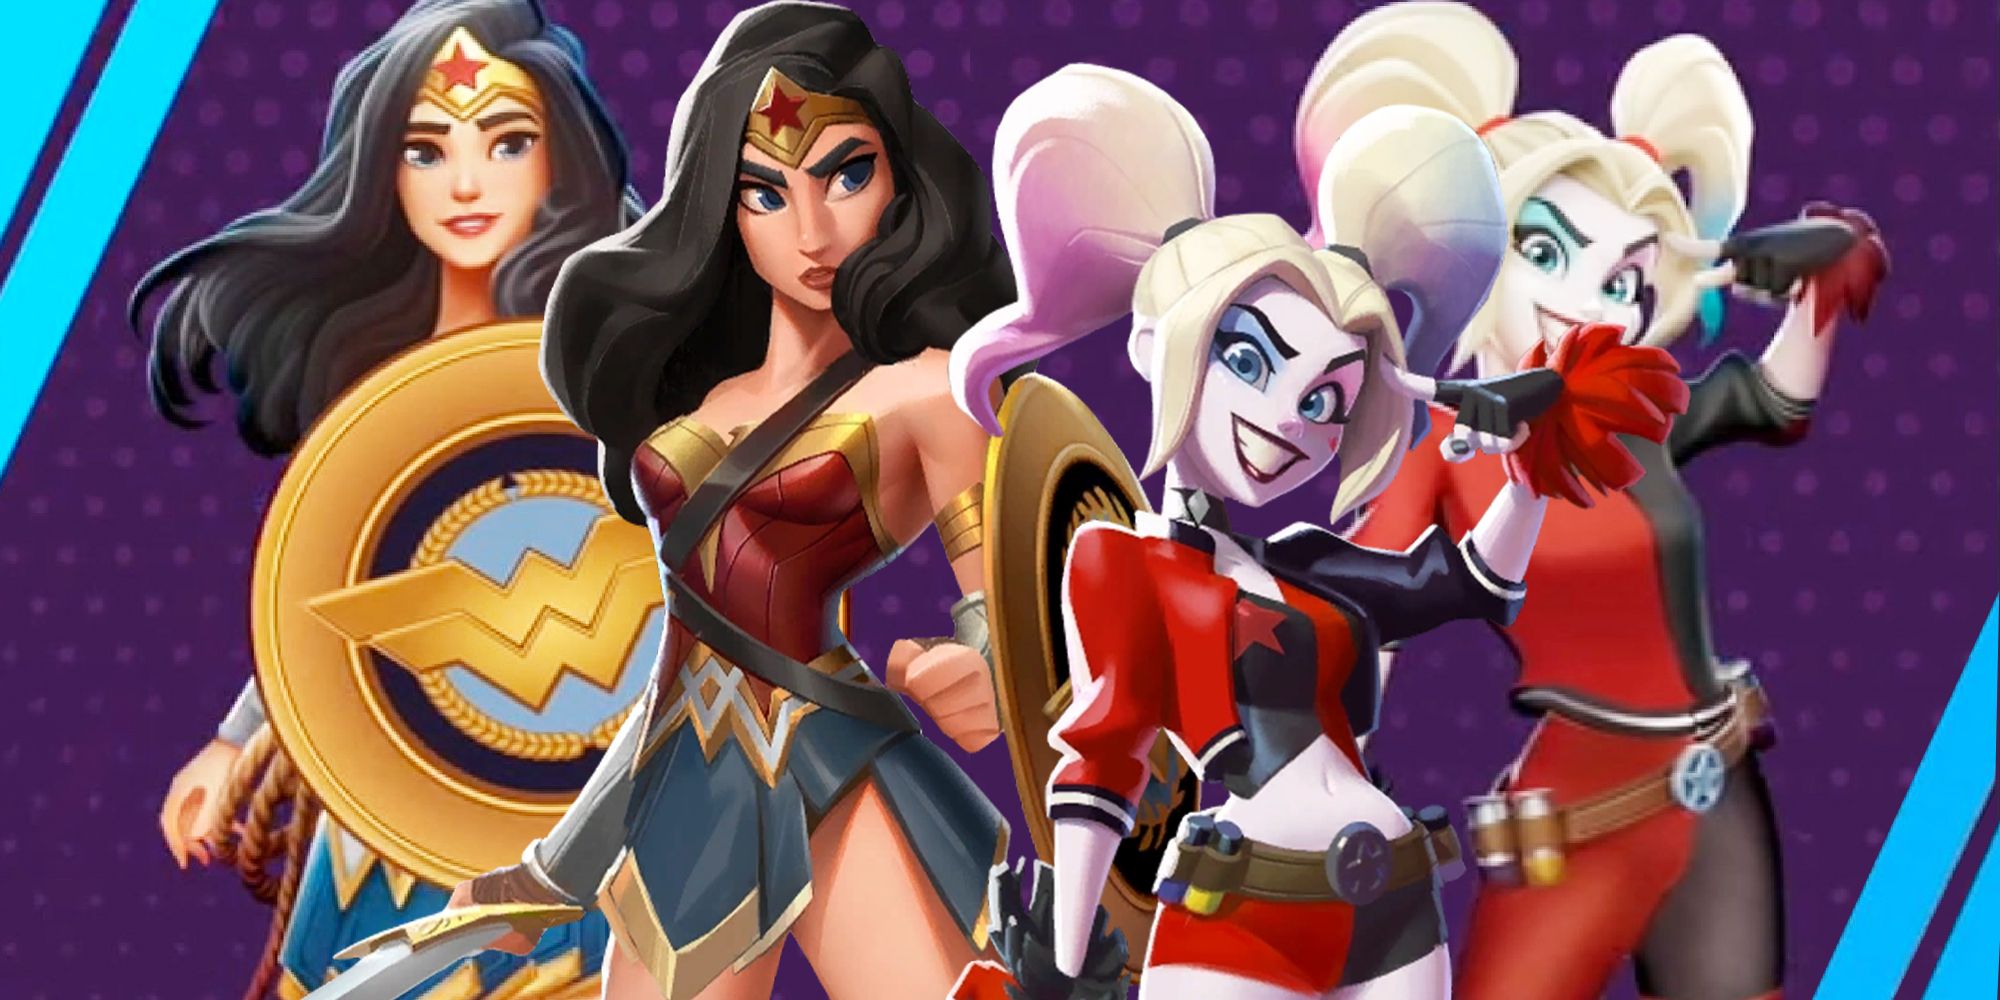 Harley Quinn and Wonder Woman's new renders in MultiVersus.